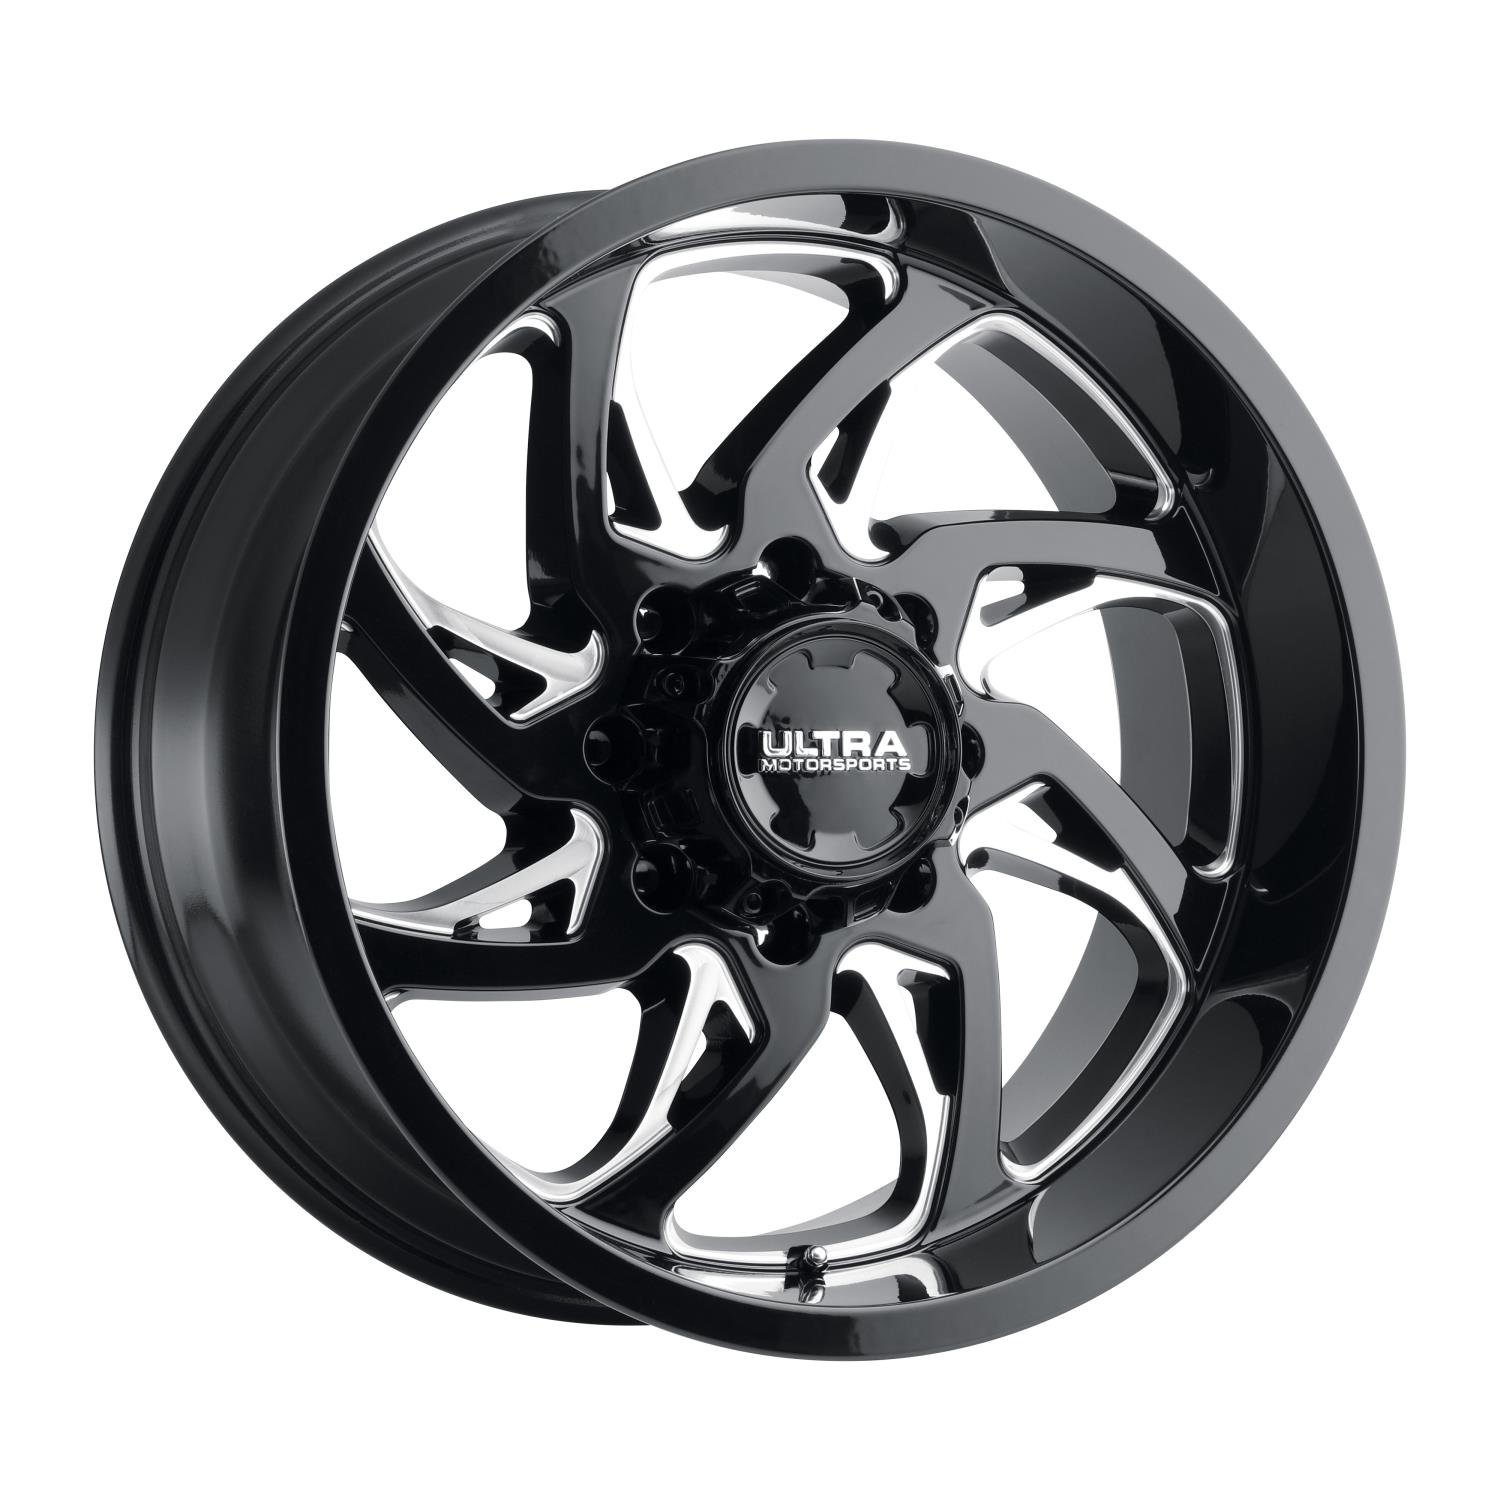 230-Series Villain Wheel, Size: 17x9", Bolt Pattern: 6x5.5"/6x135 mm [Gloss Black w/Milled Accents]